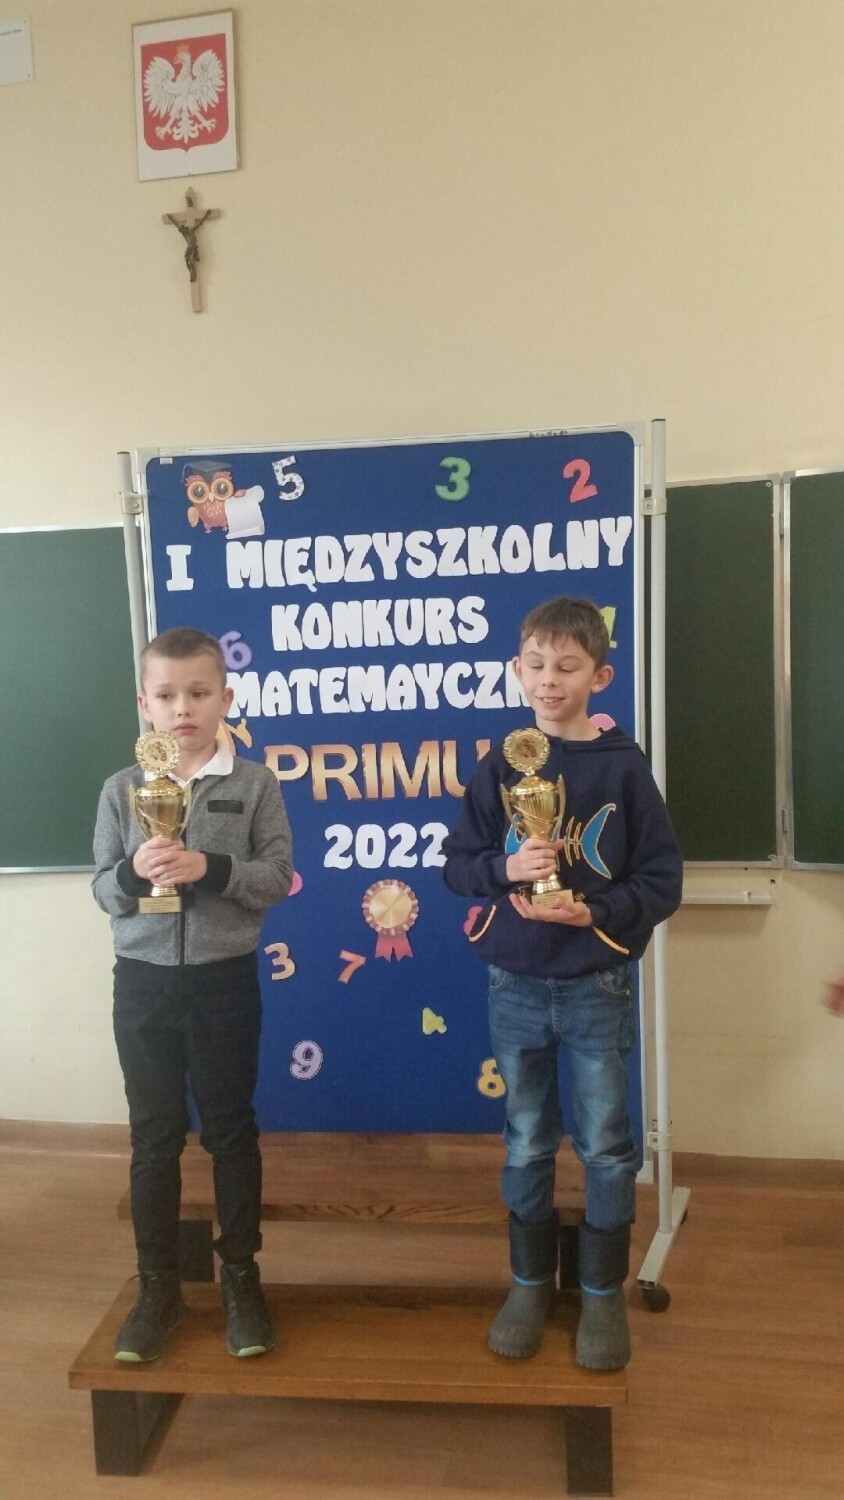 I Międzyszkolny Konkurs Matematyczny dla uczniów klas drugich "Primus" w Kielcach. Były nagrody i puchary. Zobacz zdjęcia 